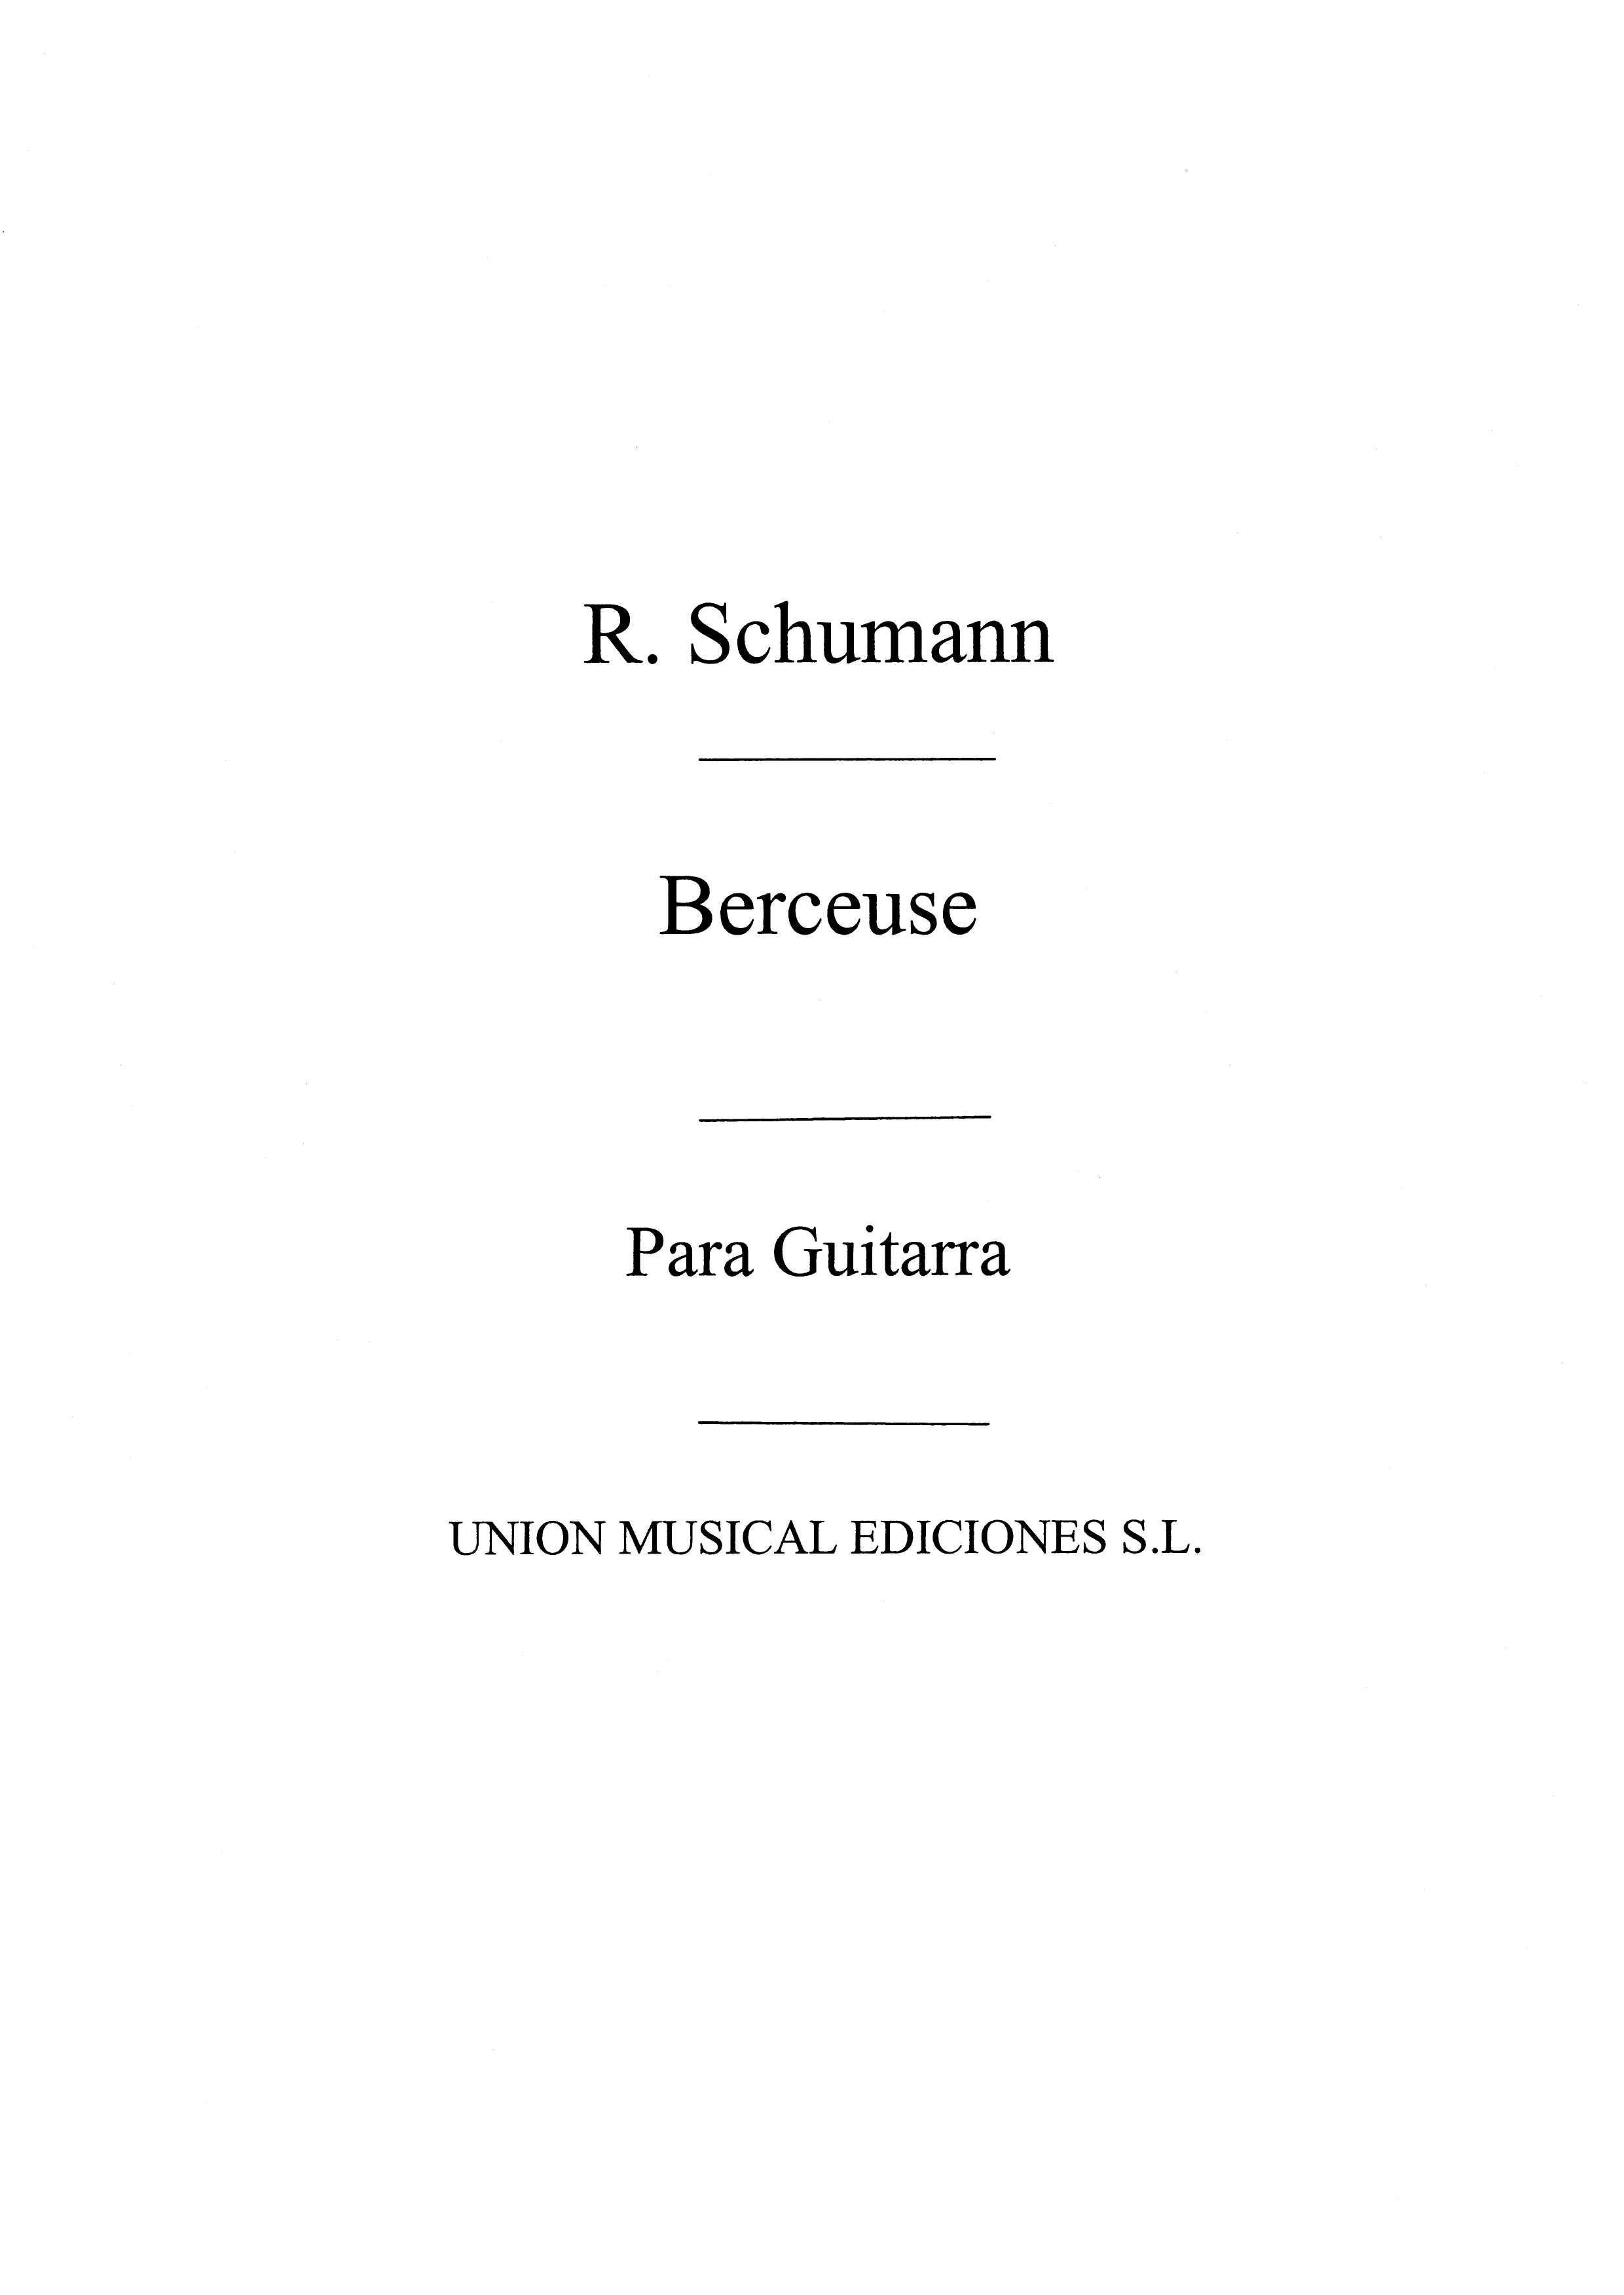 Schumann: Berceuse (Tarrega) for Guitar